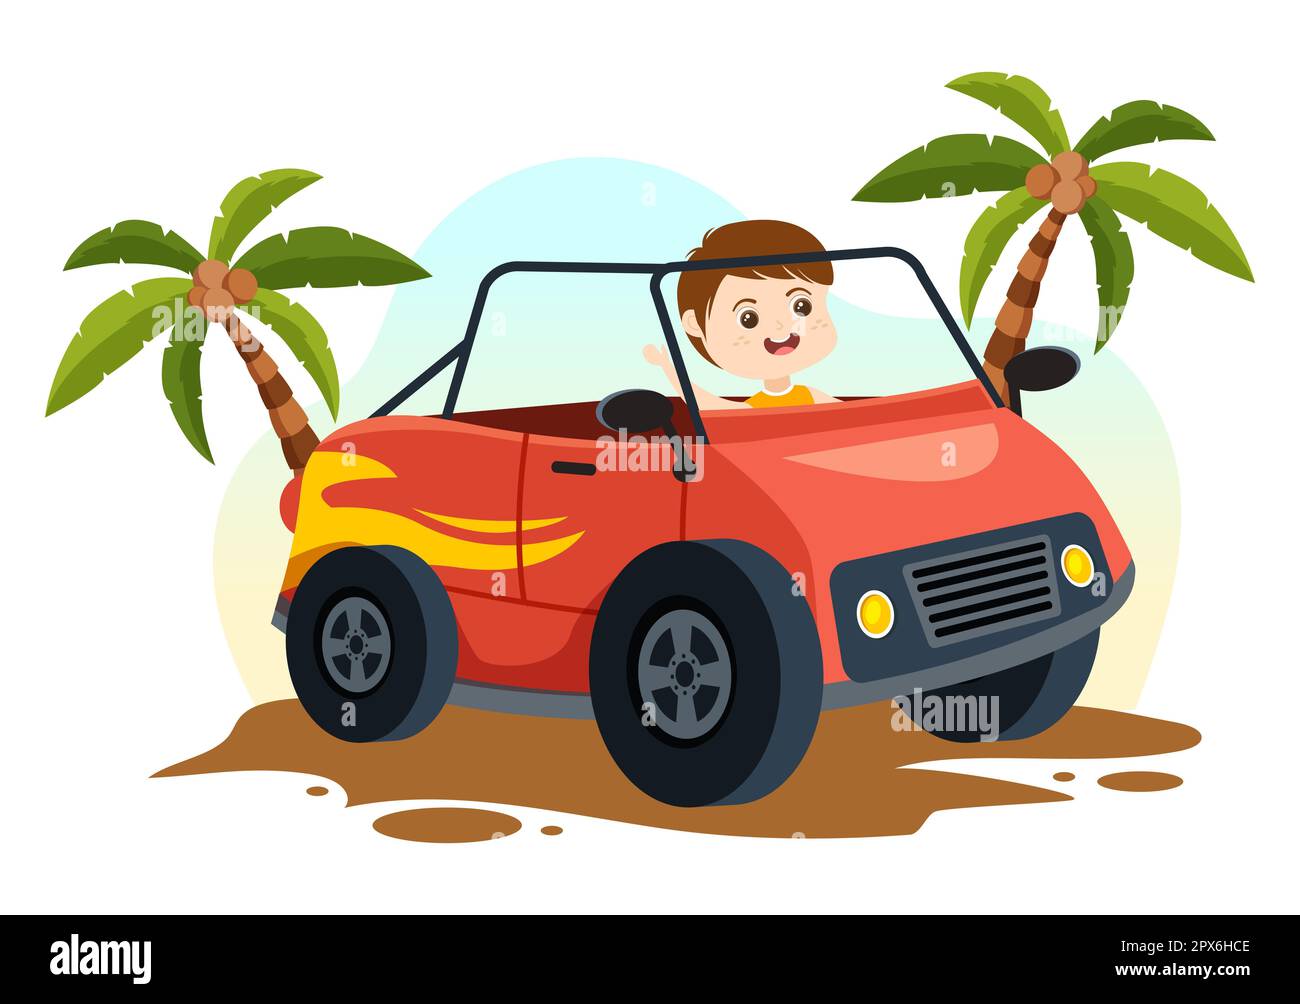 Illustration tout-terrain avec de petits enfants conduisant une Jeep pour traverser un terrain sableux dans un modèle de dessin main de dessin de dessin animé Banque D'Images